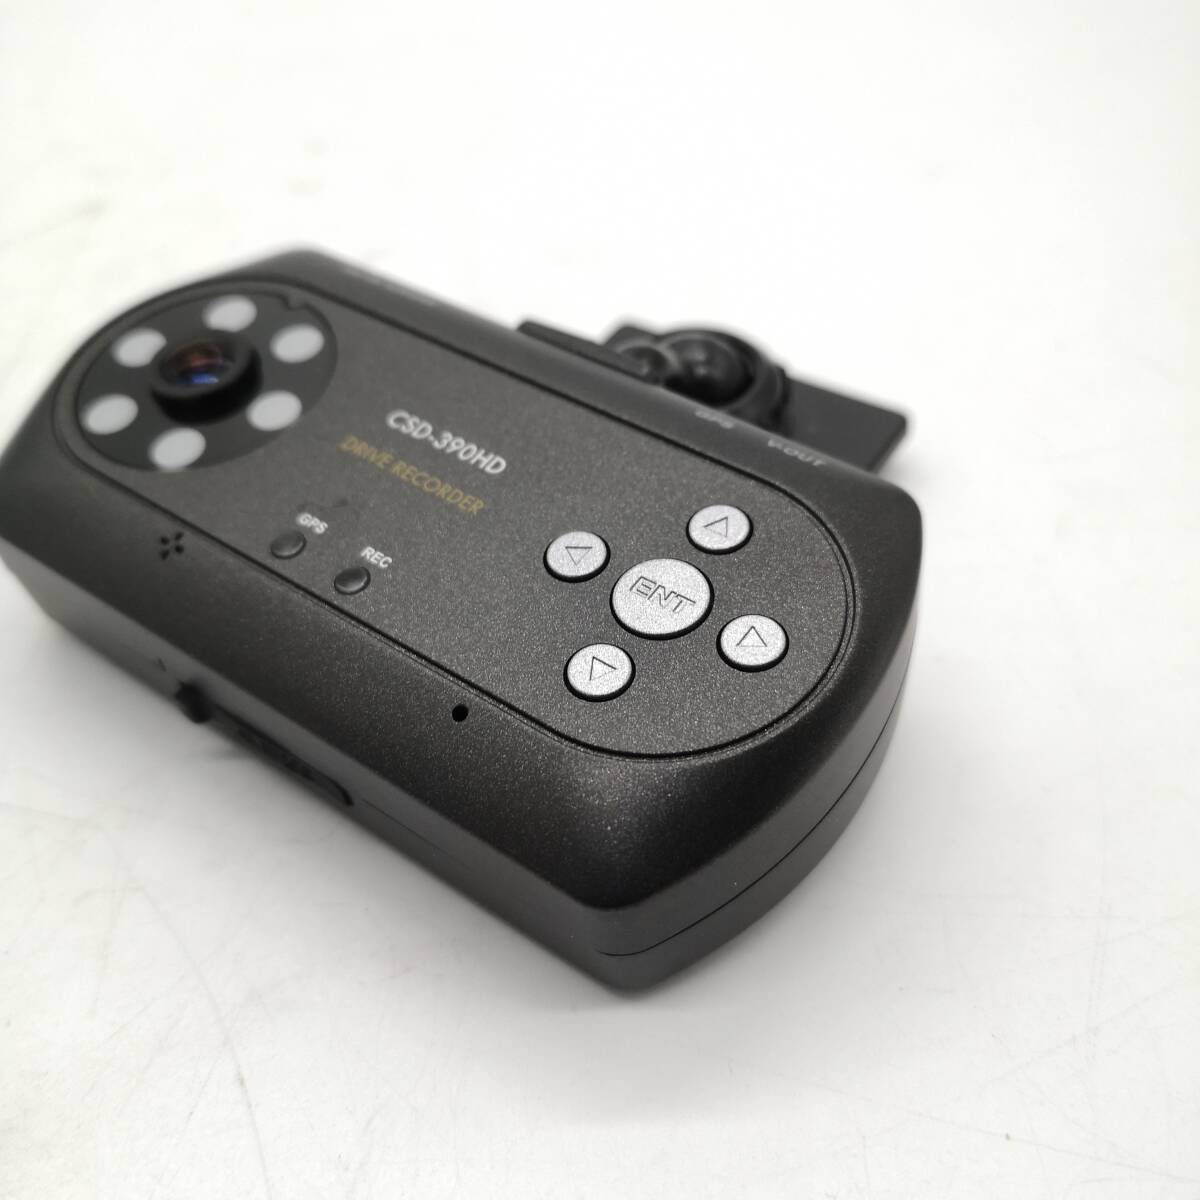 セルスタードライブレコーダー CSD-390HD 日本製3年保証 一体型前後カメラ 衝撃センサー搭載 202401-F388_画像2